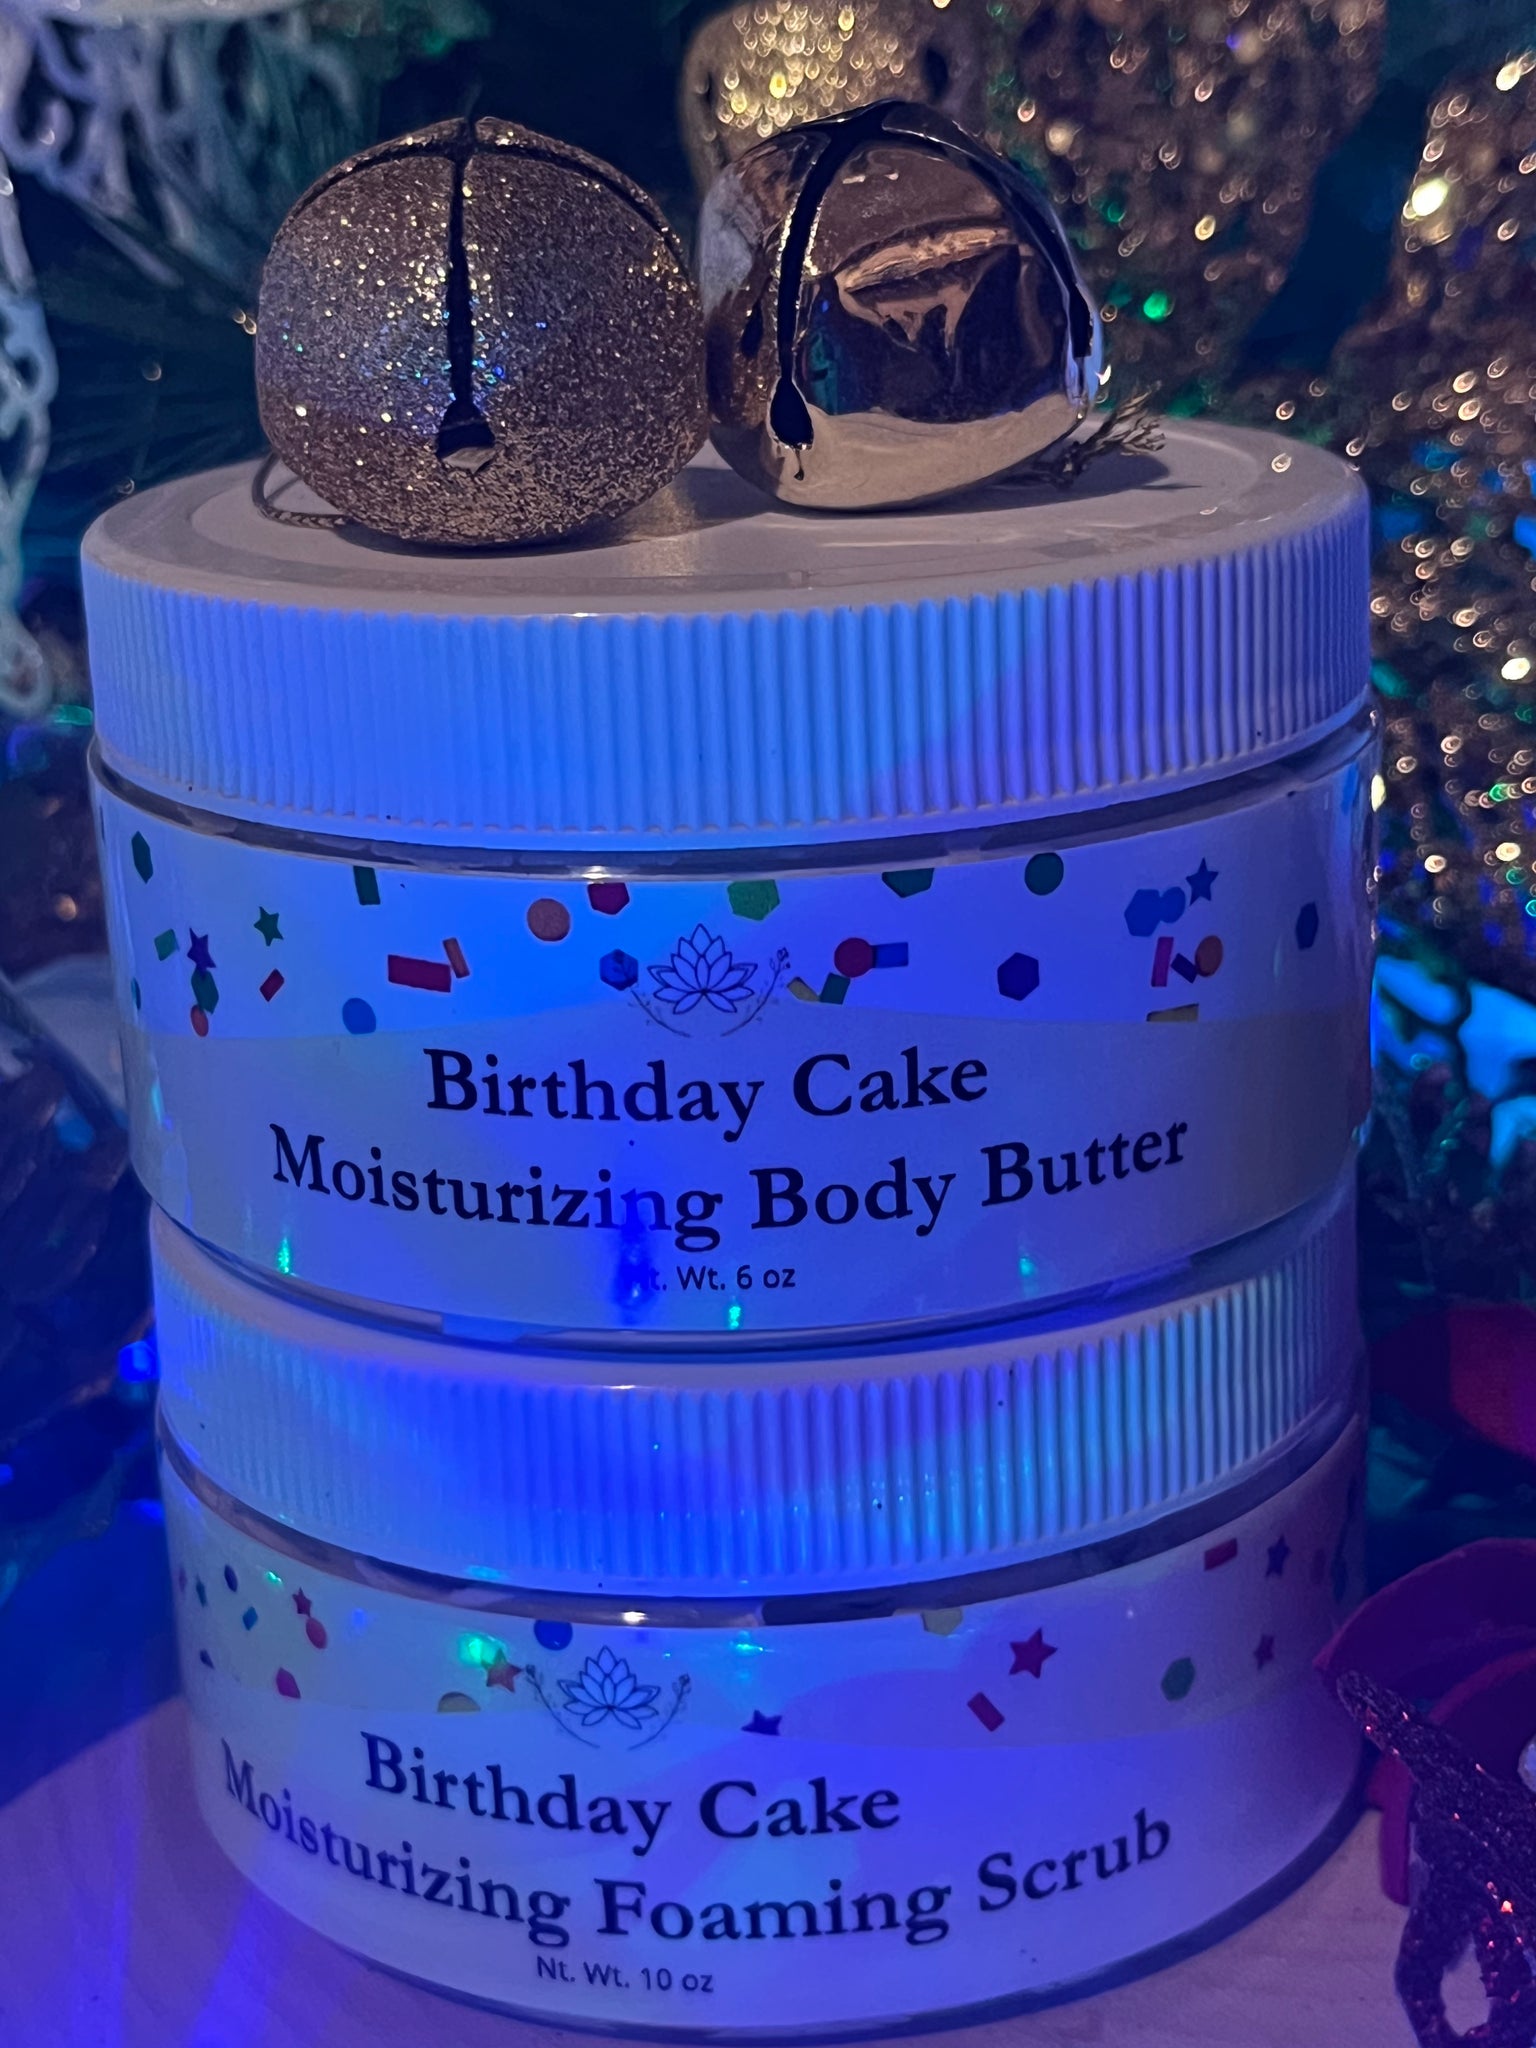 Birthday cake moisturizing body scrub